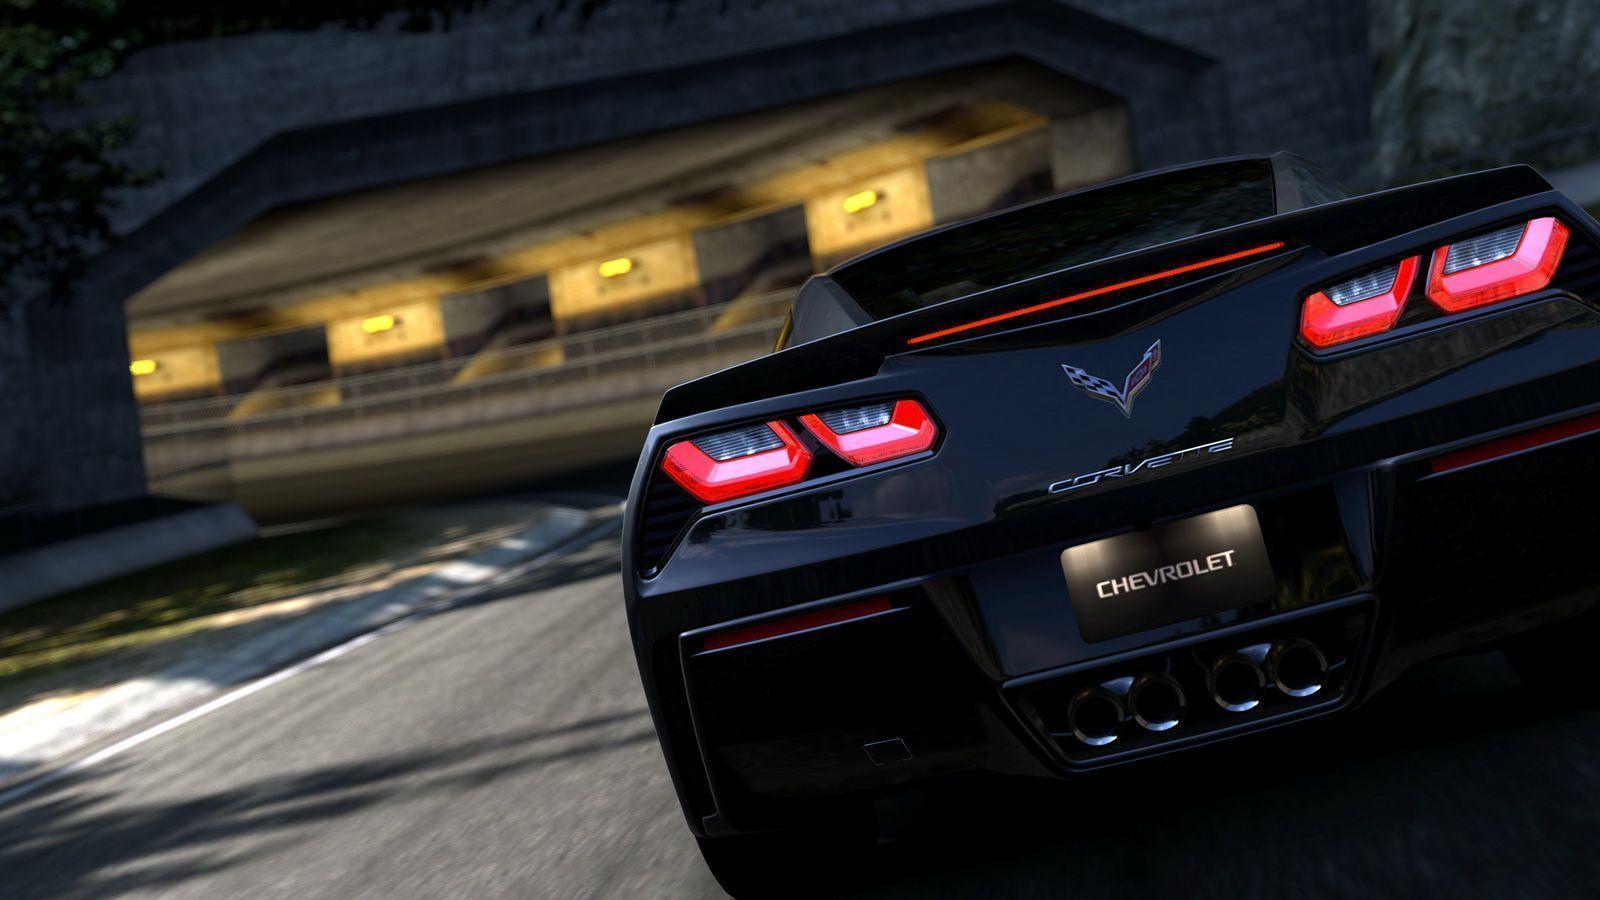 Corvette Wallpaper